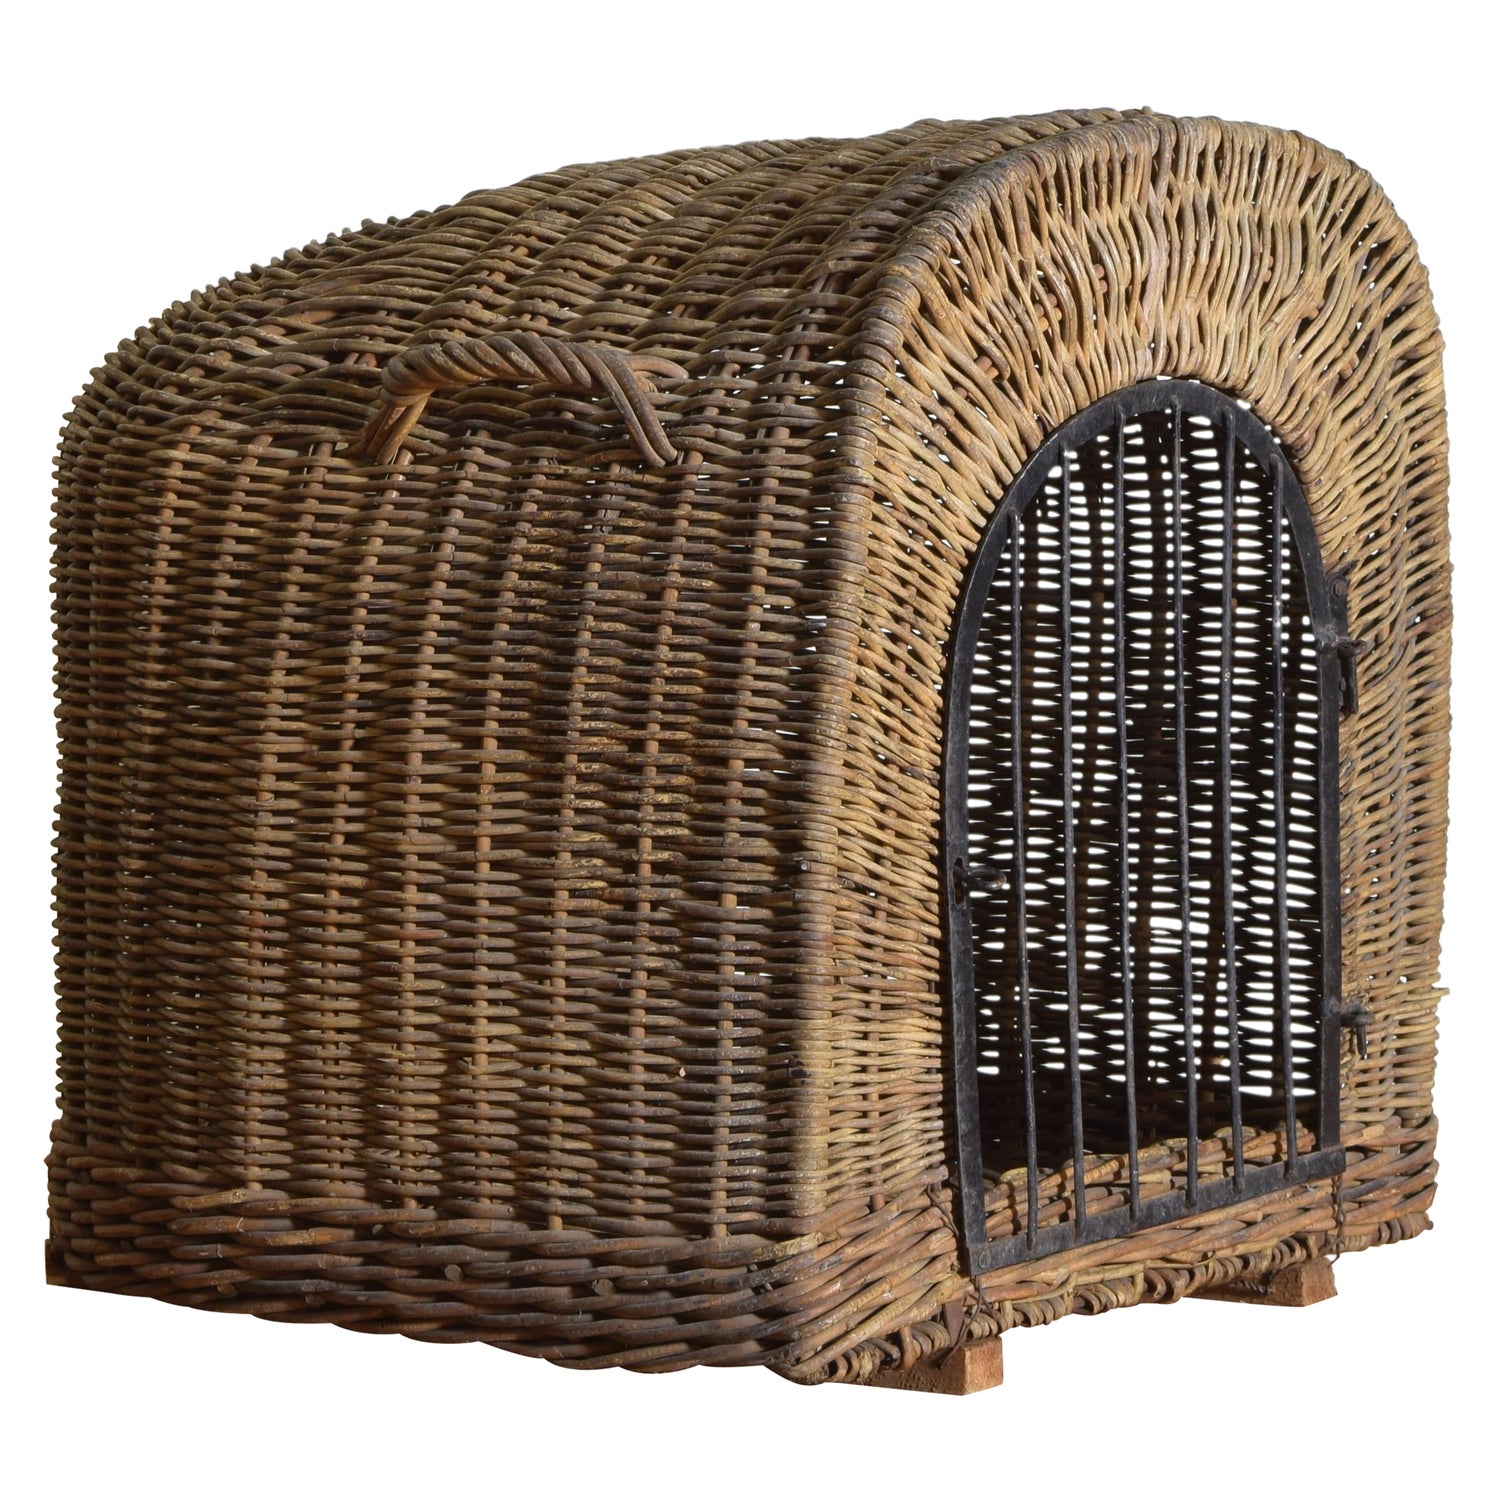 Wicker Dog Kennel - 2 For Sale on 1stDibs | wicker dog crate, wicker kennel,  dog crate wicker